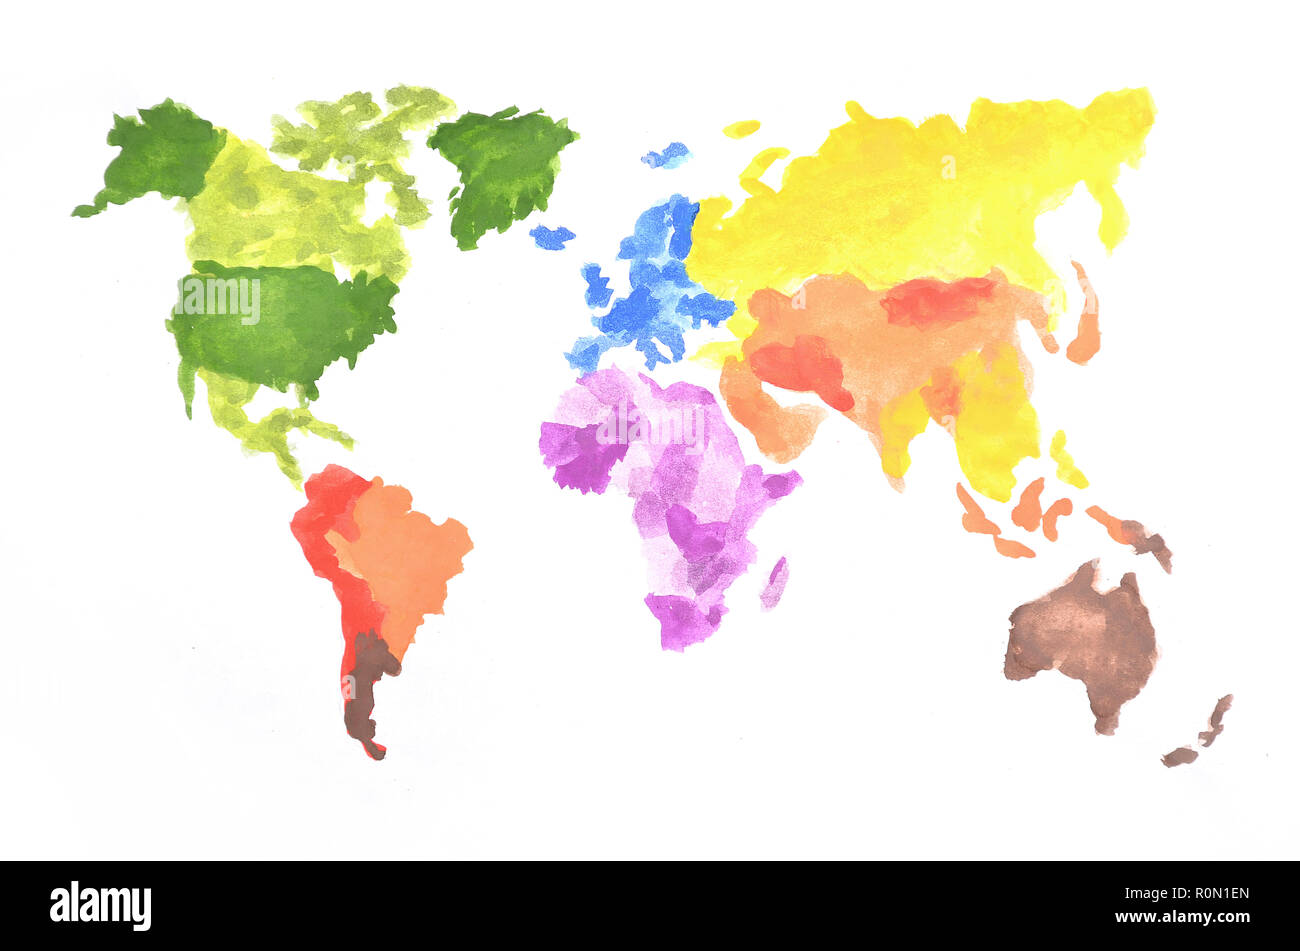 La carte du monde est fait avec des peintures à l'aquarelle de couleur sur papier blanc. Tous les continents du monde sont représentés dans différentes couleurs . Banque D'Images